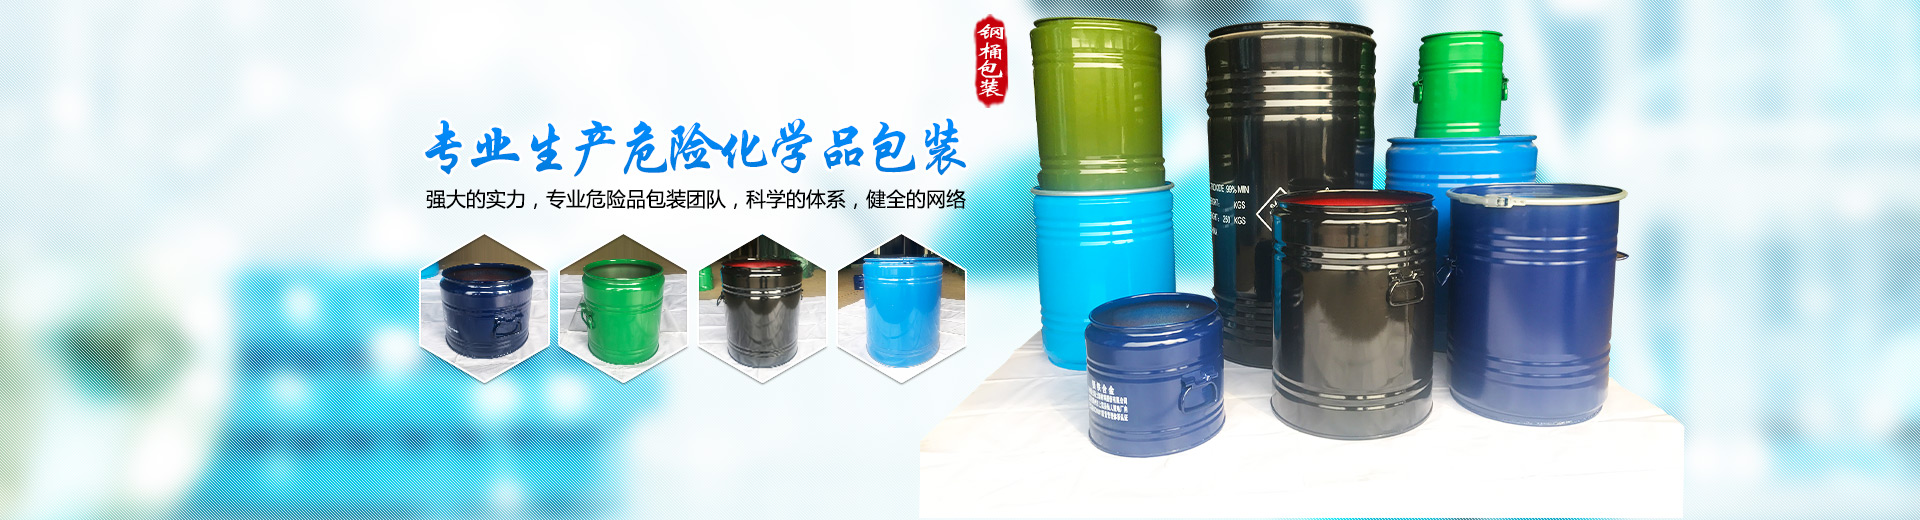 衡阳市迪伟包装有限公司_危险品包装钢桶生产|衡阳钢桶生产|危险化学品包装